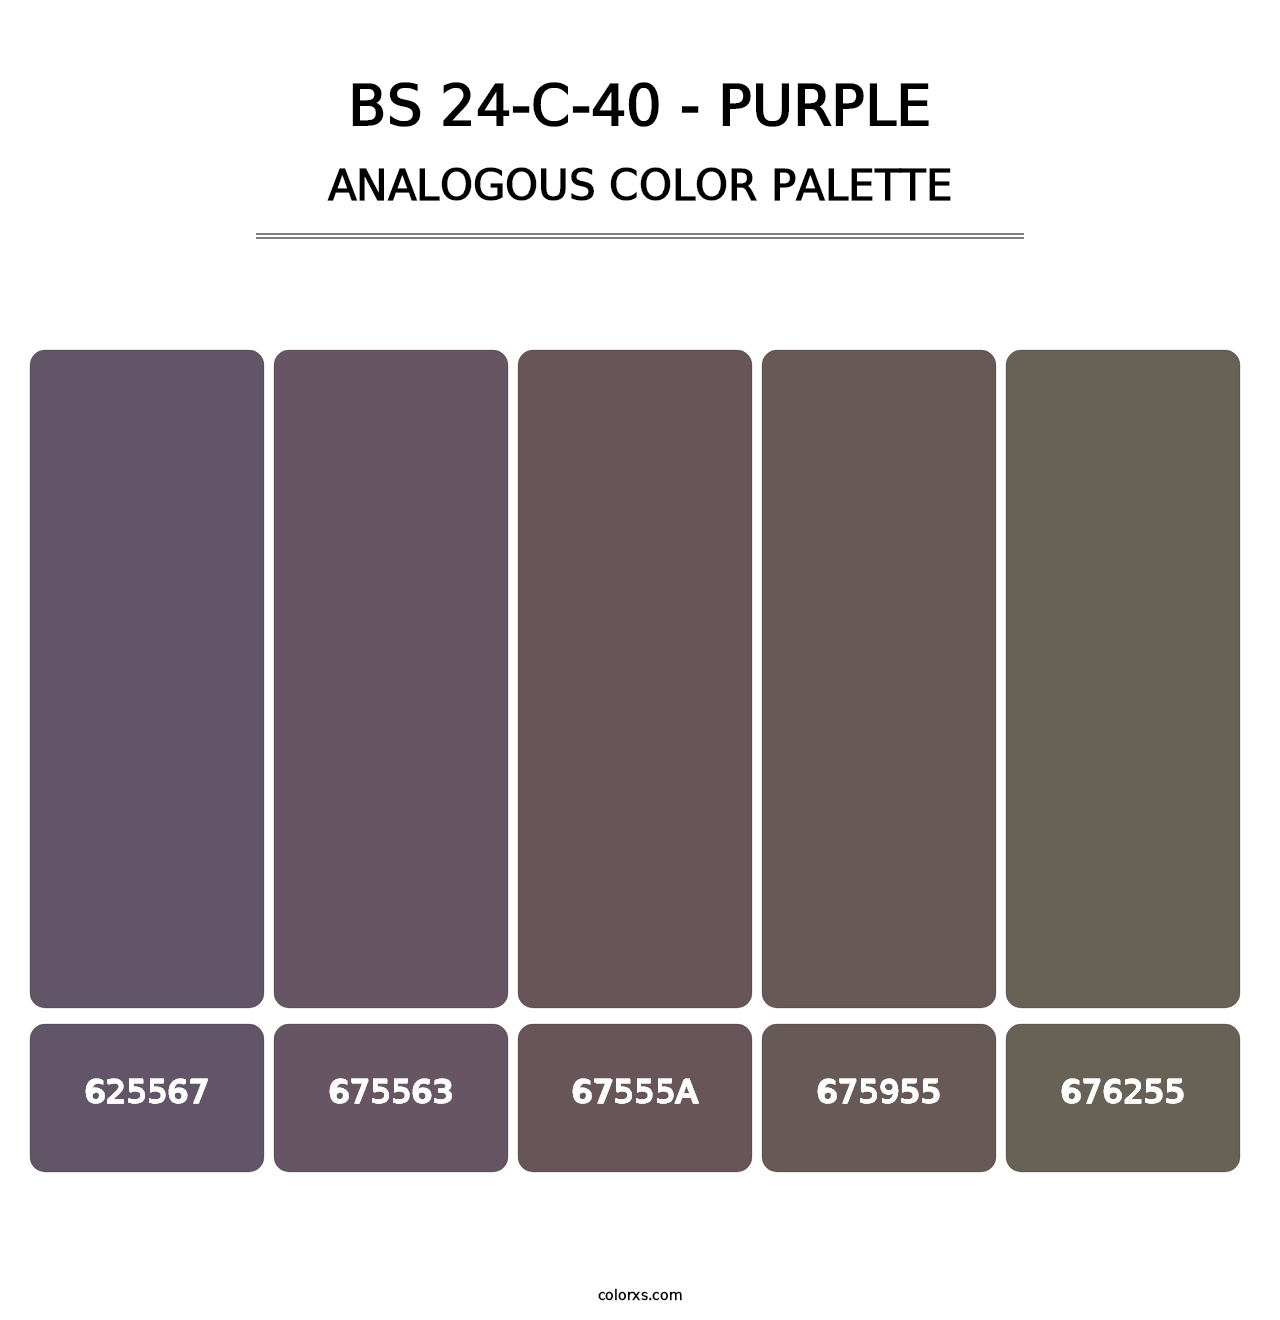 BS 24-C-40 - Purple - Analogous Color Palette